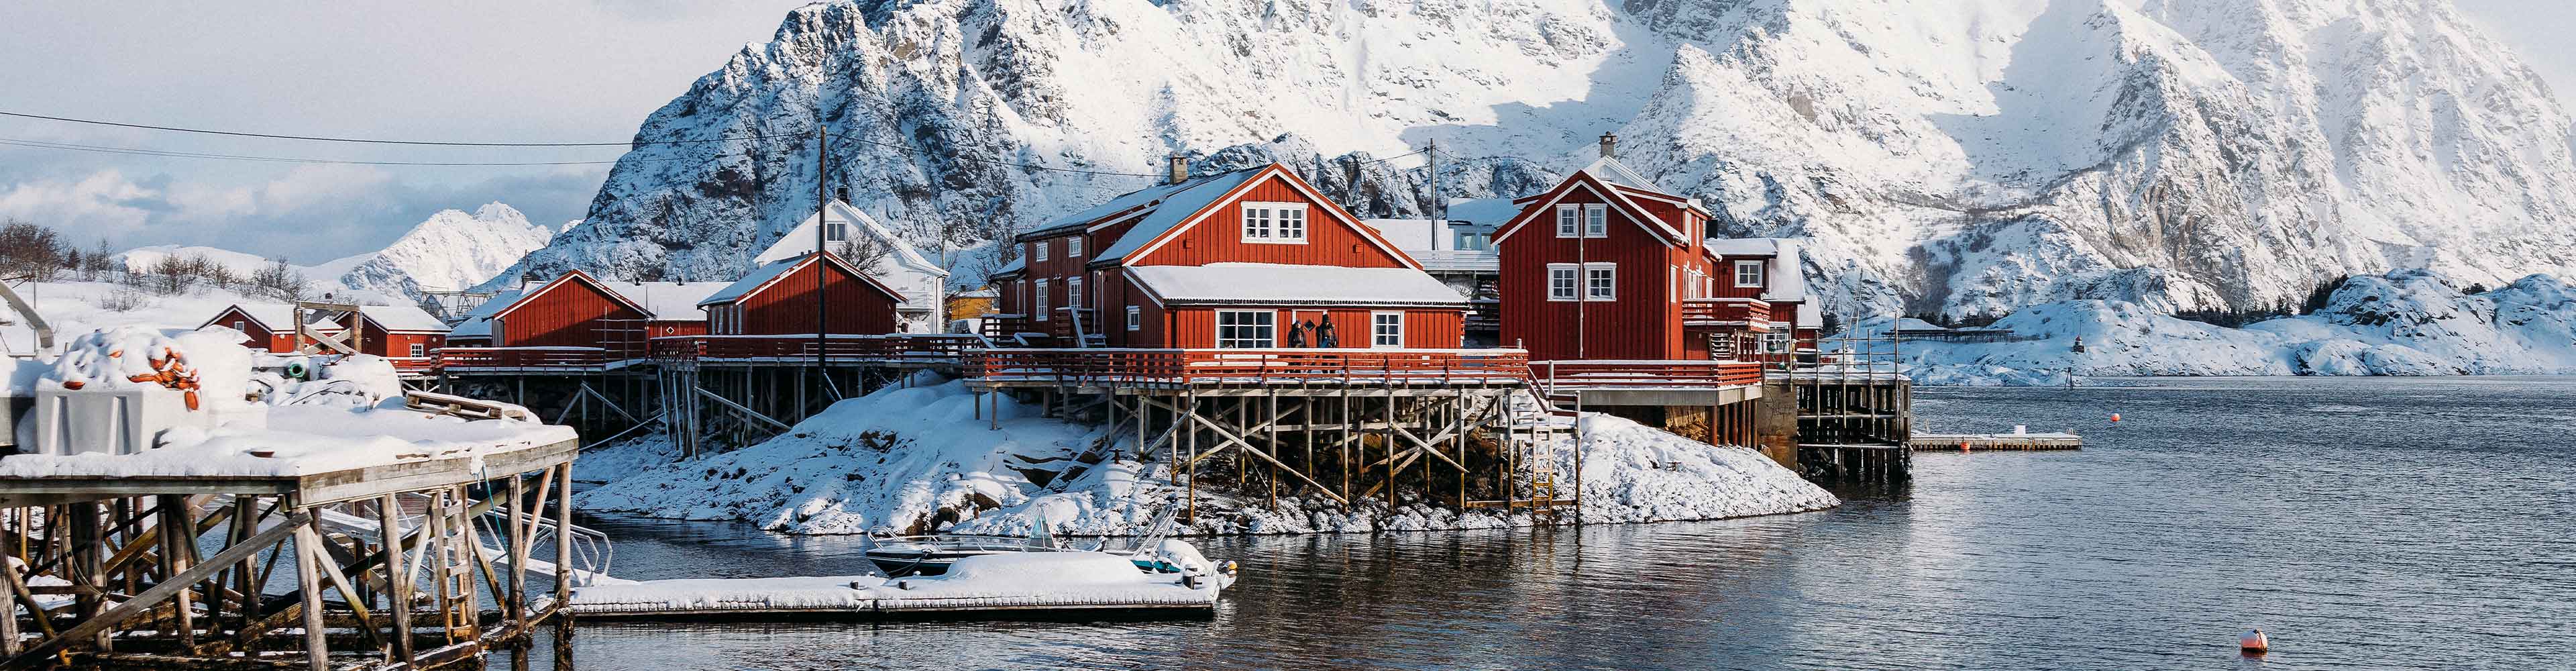 Landscape, cabin in Norway